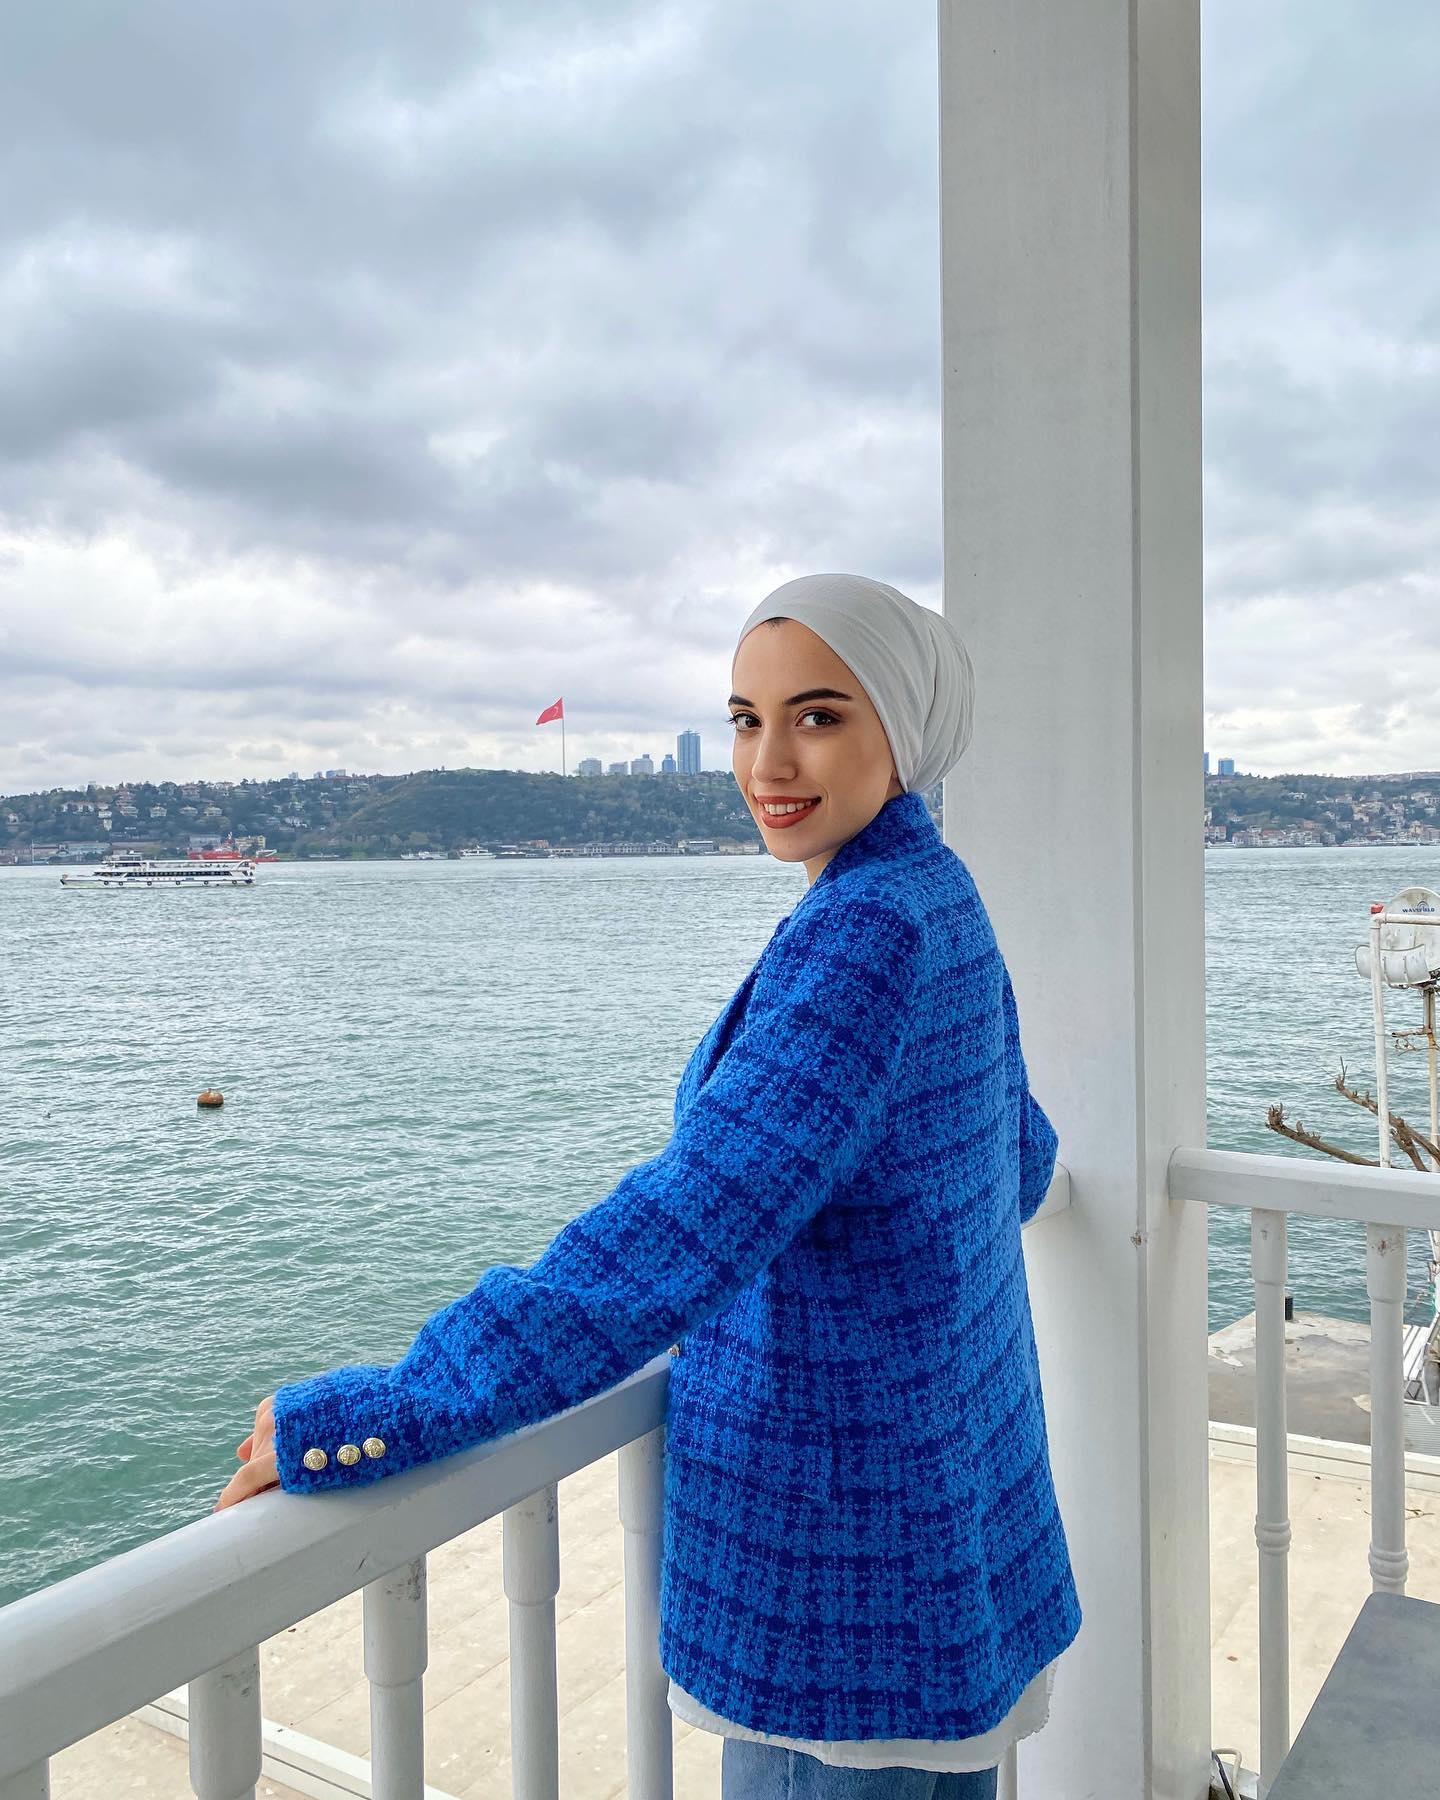 Gelin Evi Eylem Bingöl Yıldırım kimdir? Instagram hesabı